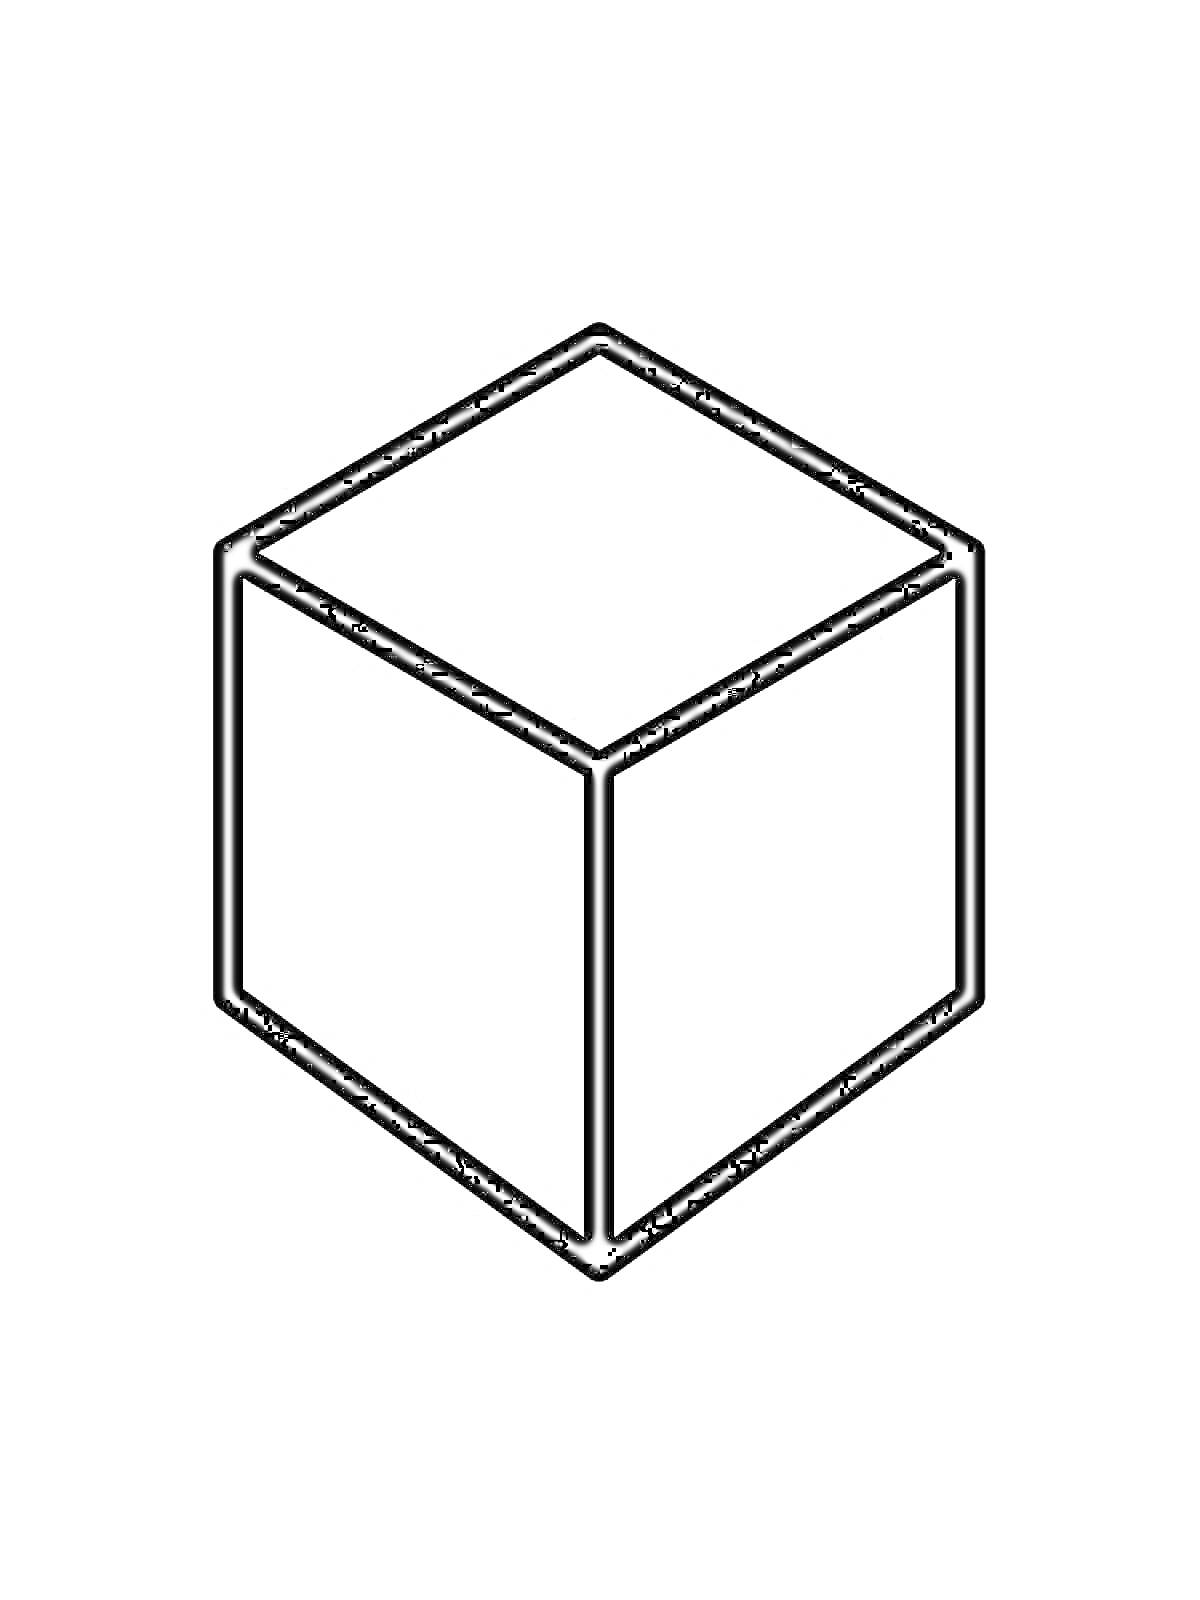 Раскраска Кубик в изометрической проекции